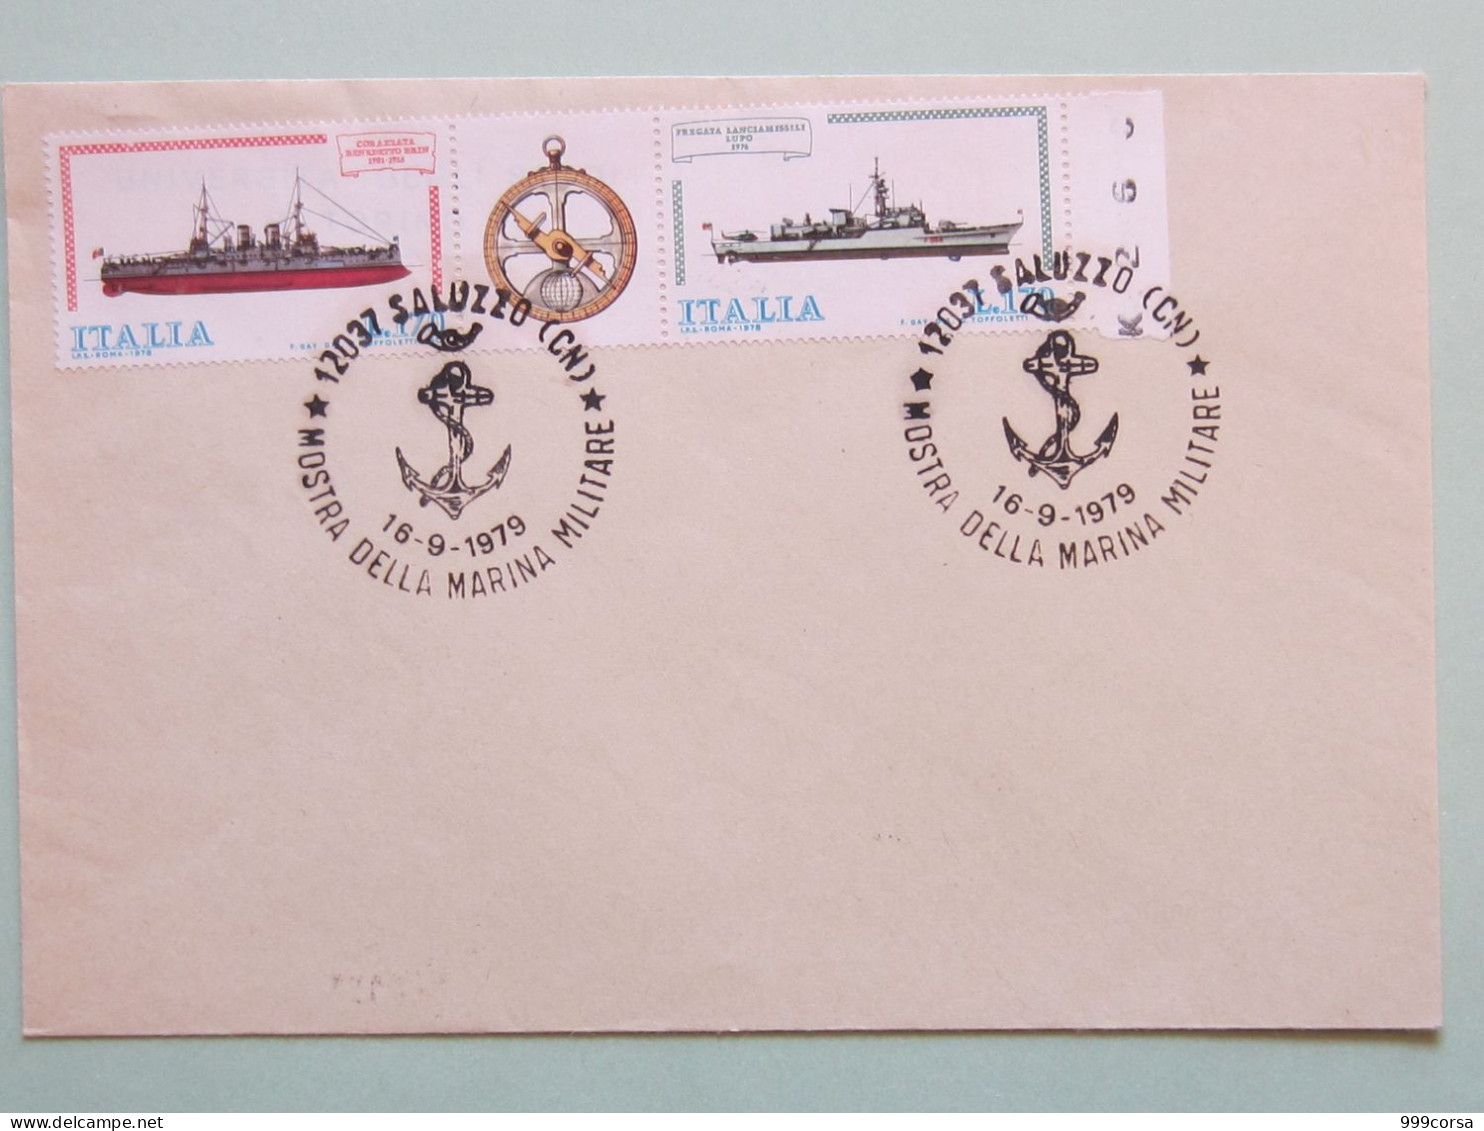 Militari, Annullo Speciale Mostra Marina Militare (àncora) Saluzzo 16-9-1979, Navi - 1971-80: Marcofilie